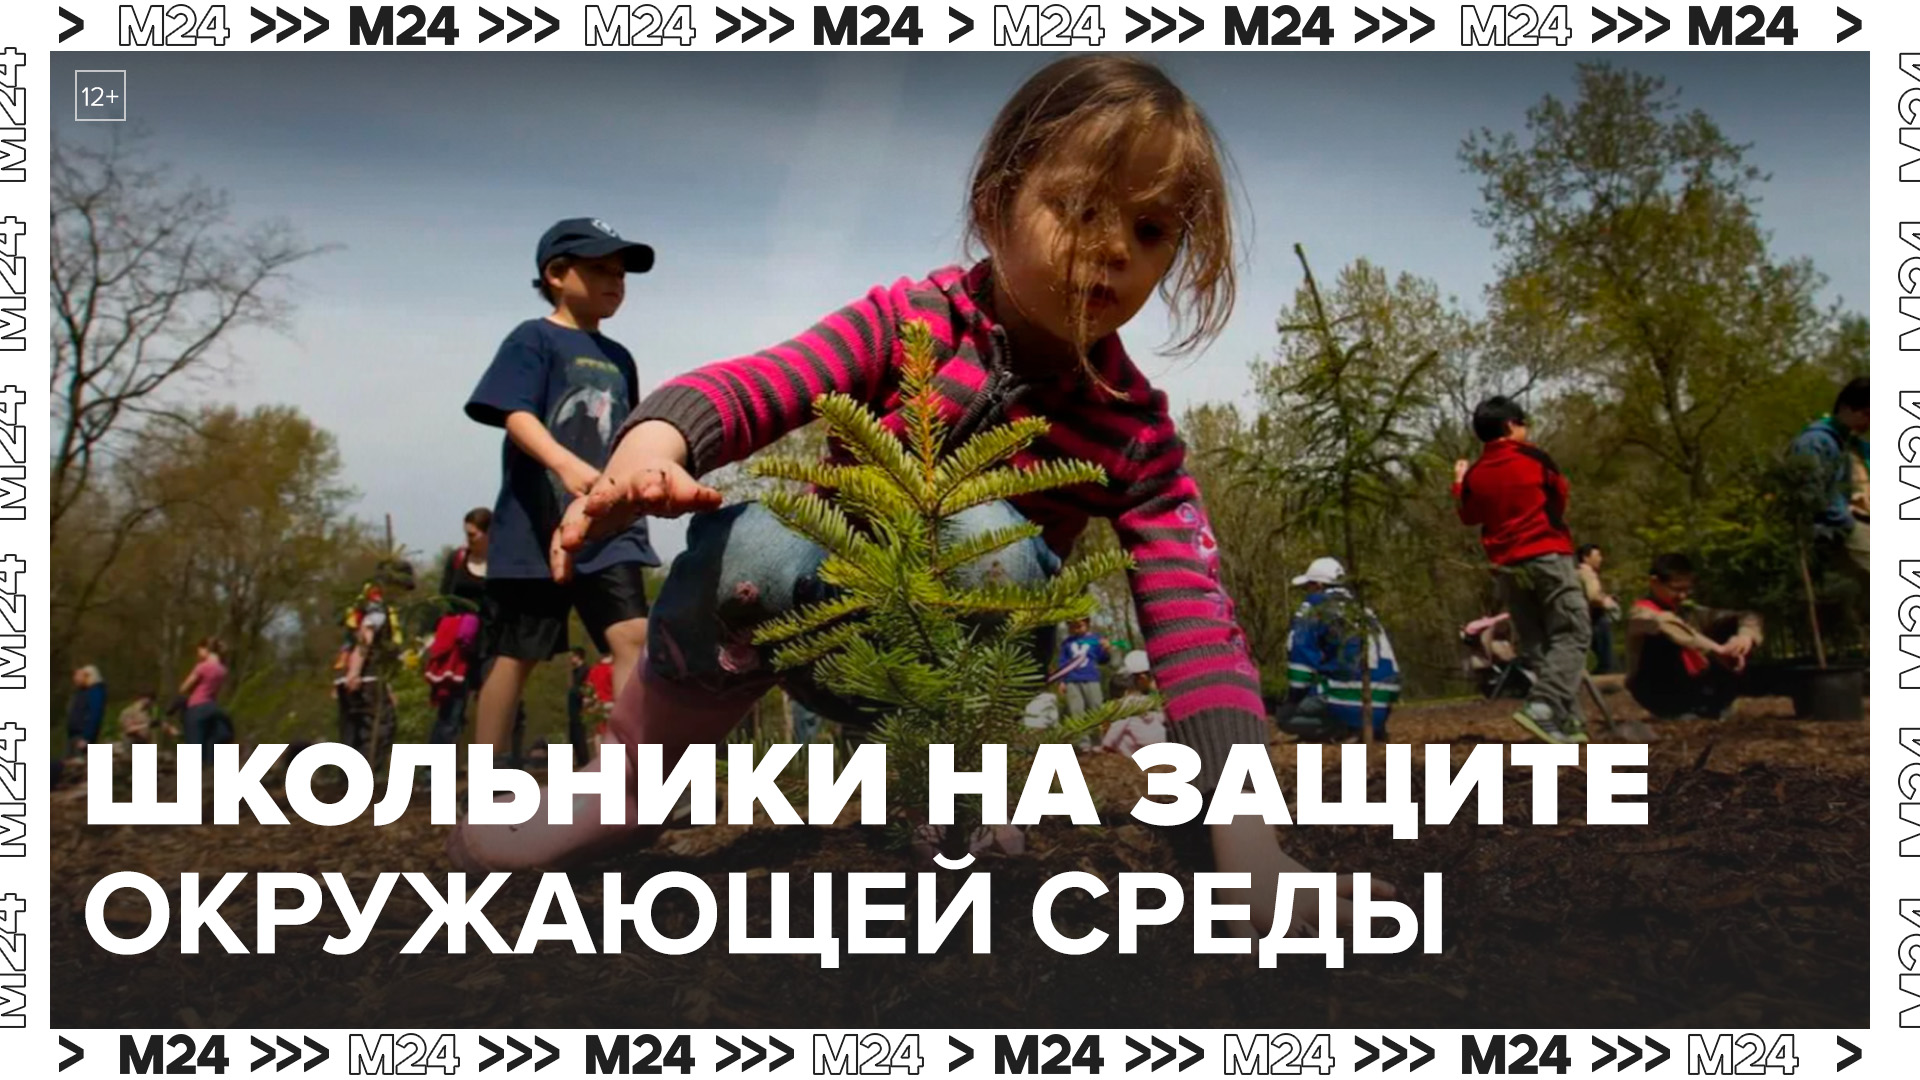 Около 500 мероприятий по защите окружающей среды ежегодно проходит в школах Москвы - Москва 24